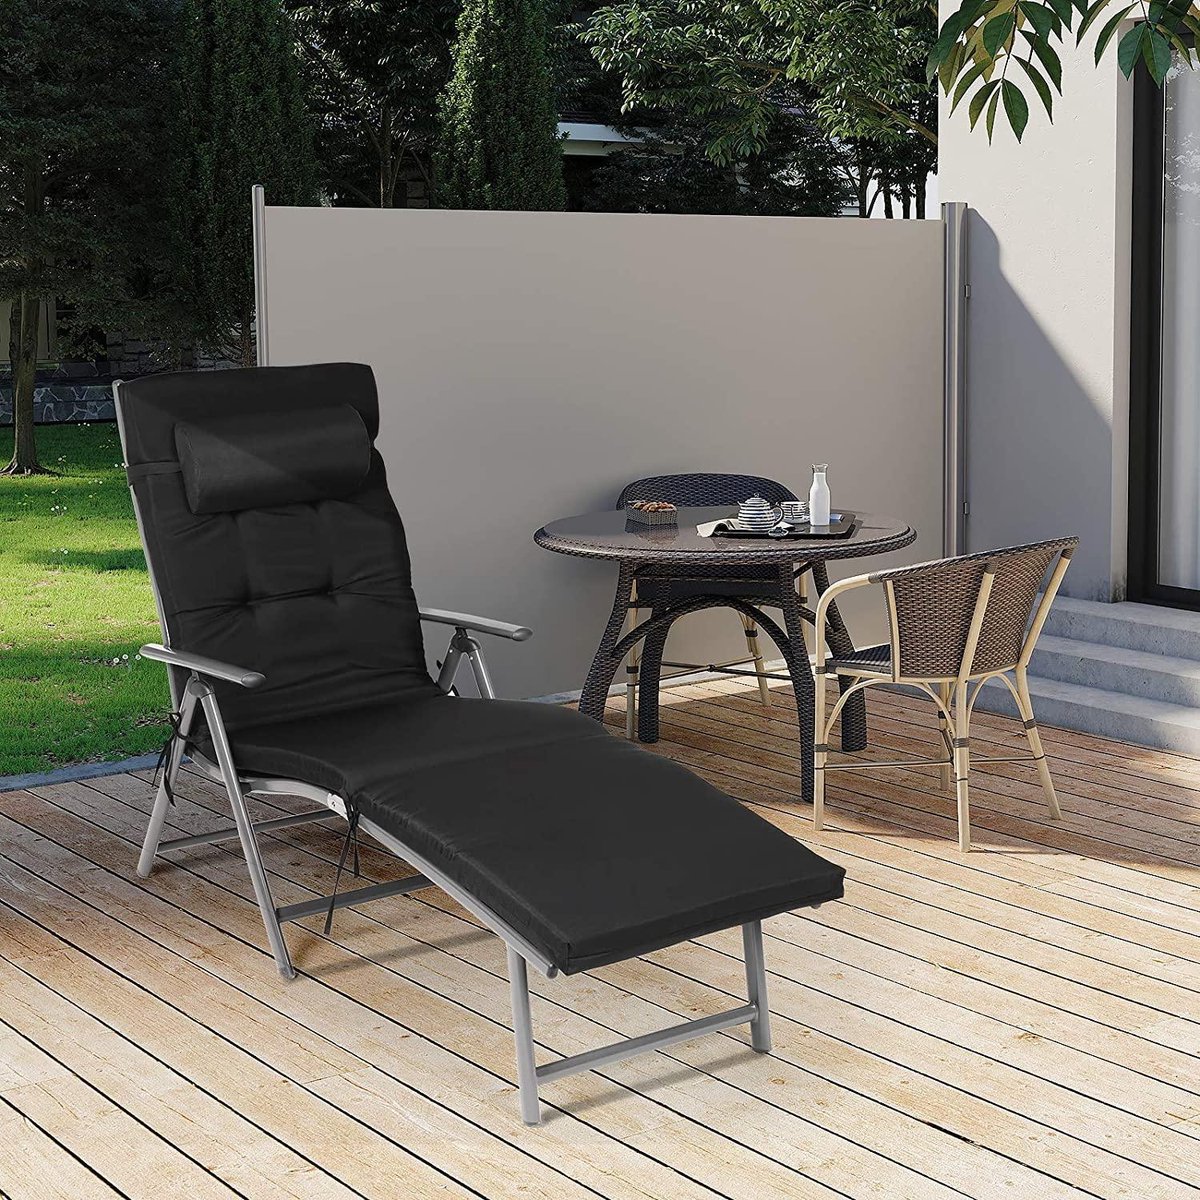 SONGMICS ligstoel, opvouwbaar, dekstoel met 6 cm dikke matras, afneembaar kussen, gemaakt van roestvrij aluminium, ademend, comfortabel, verstelbaar, belastbaar tot 150 kg, zwart GCB24BK